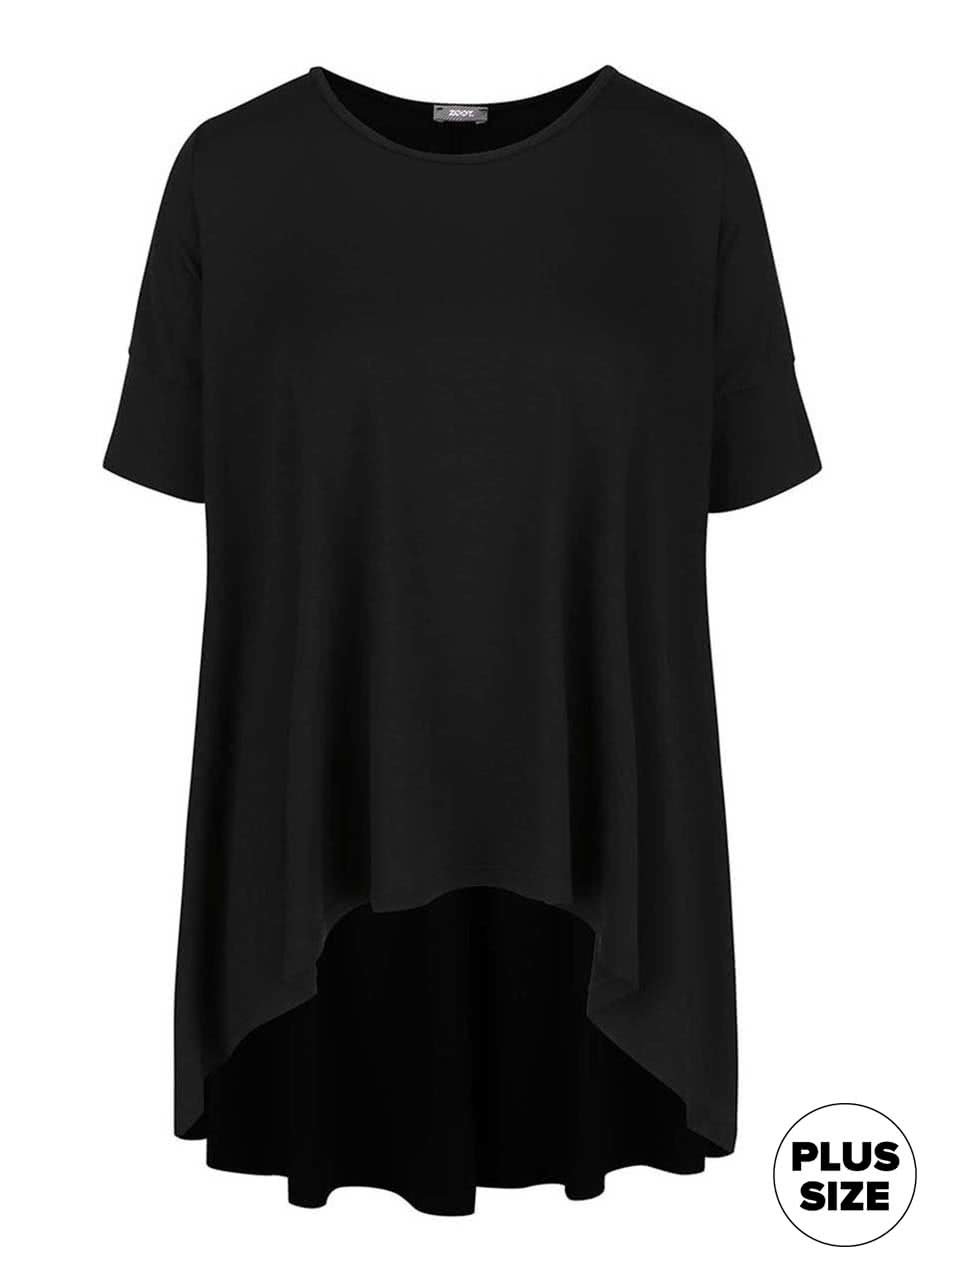 Černé dámské volnější tričko s kratší přední částí ZOOT simple